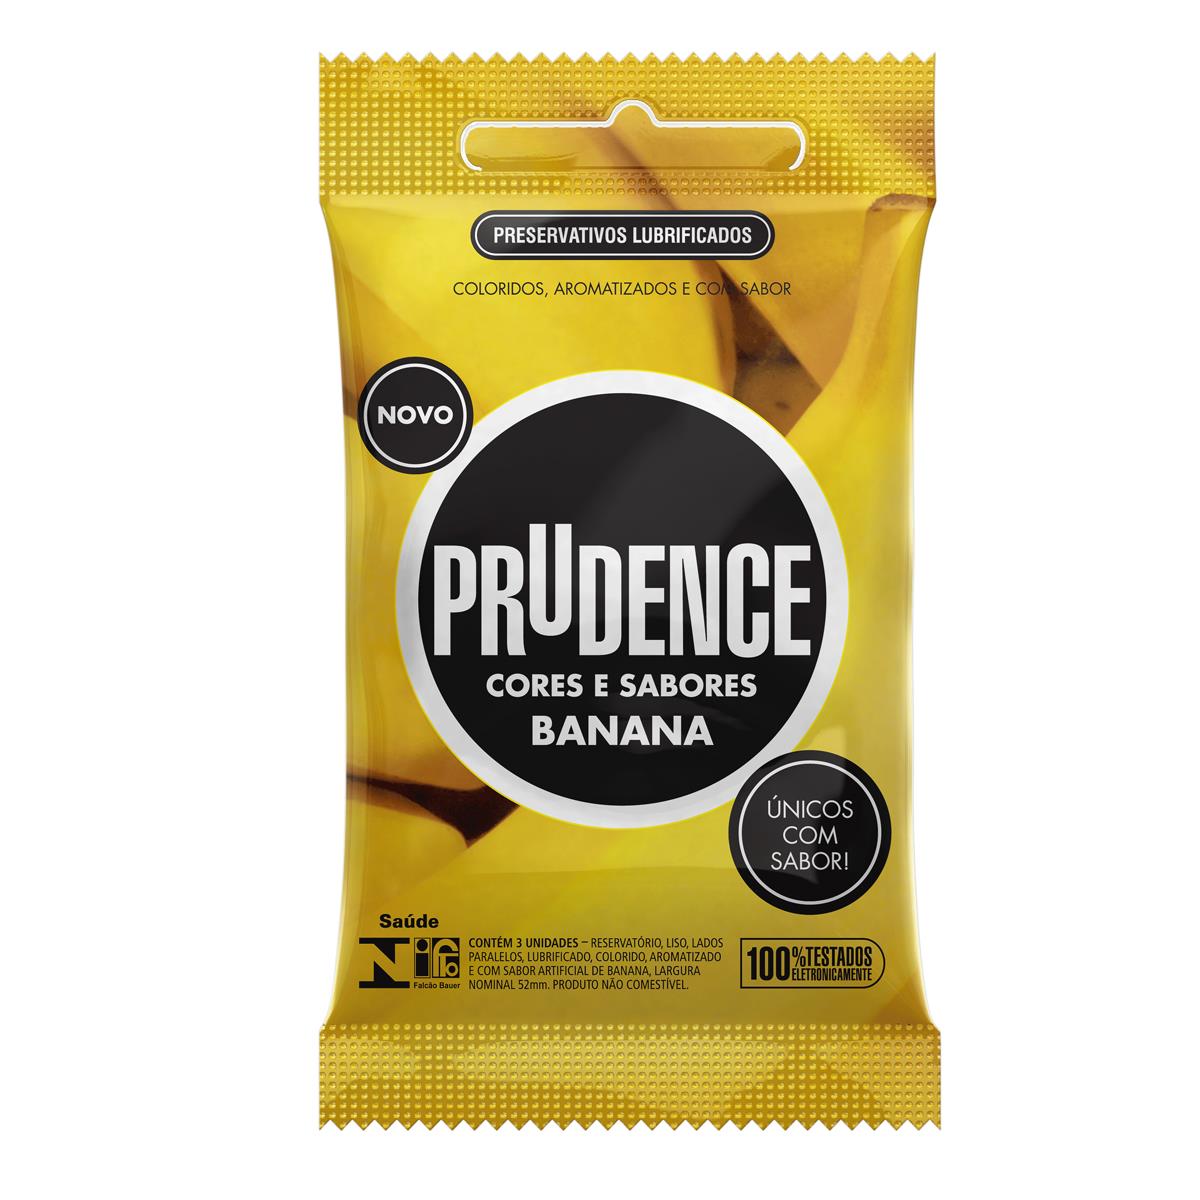 Preservativos Cores e Sabores Banana Prudence